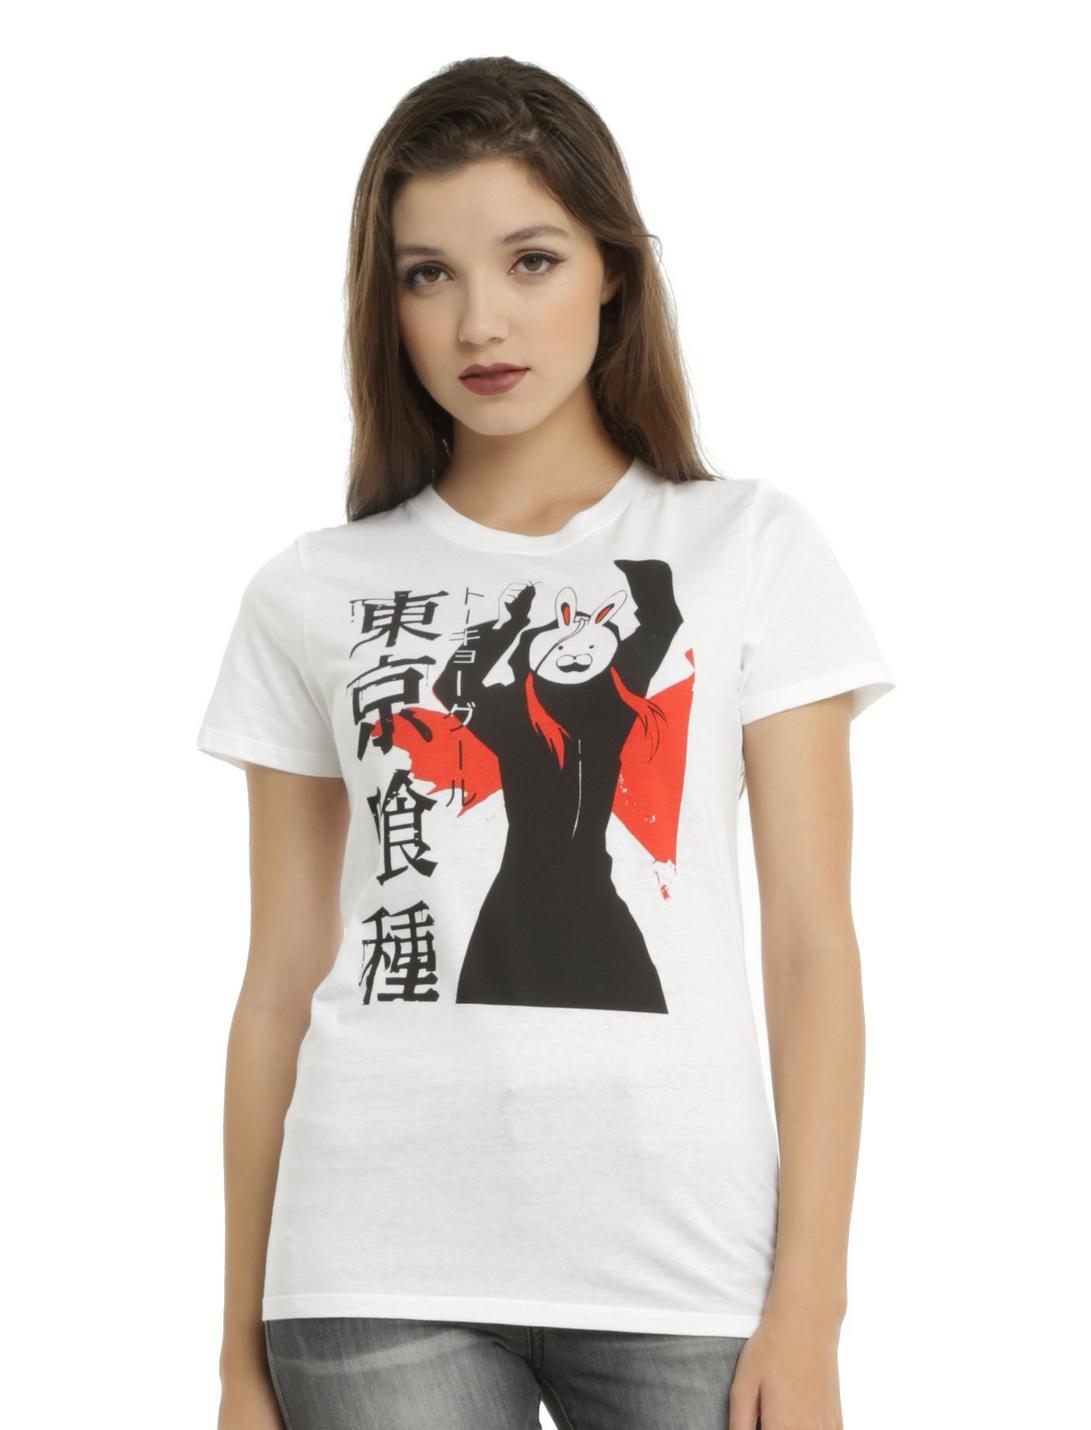 Tokyo Ghoul Chibi Girls T-Shirt, BLACK, hi-res